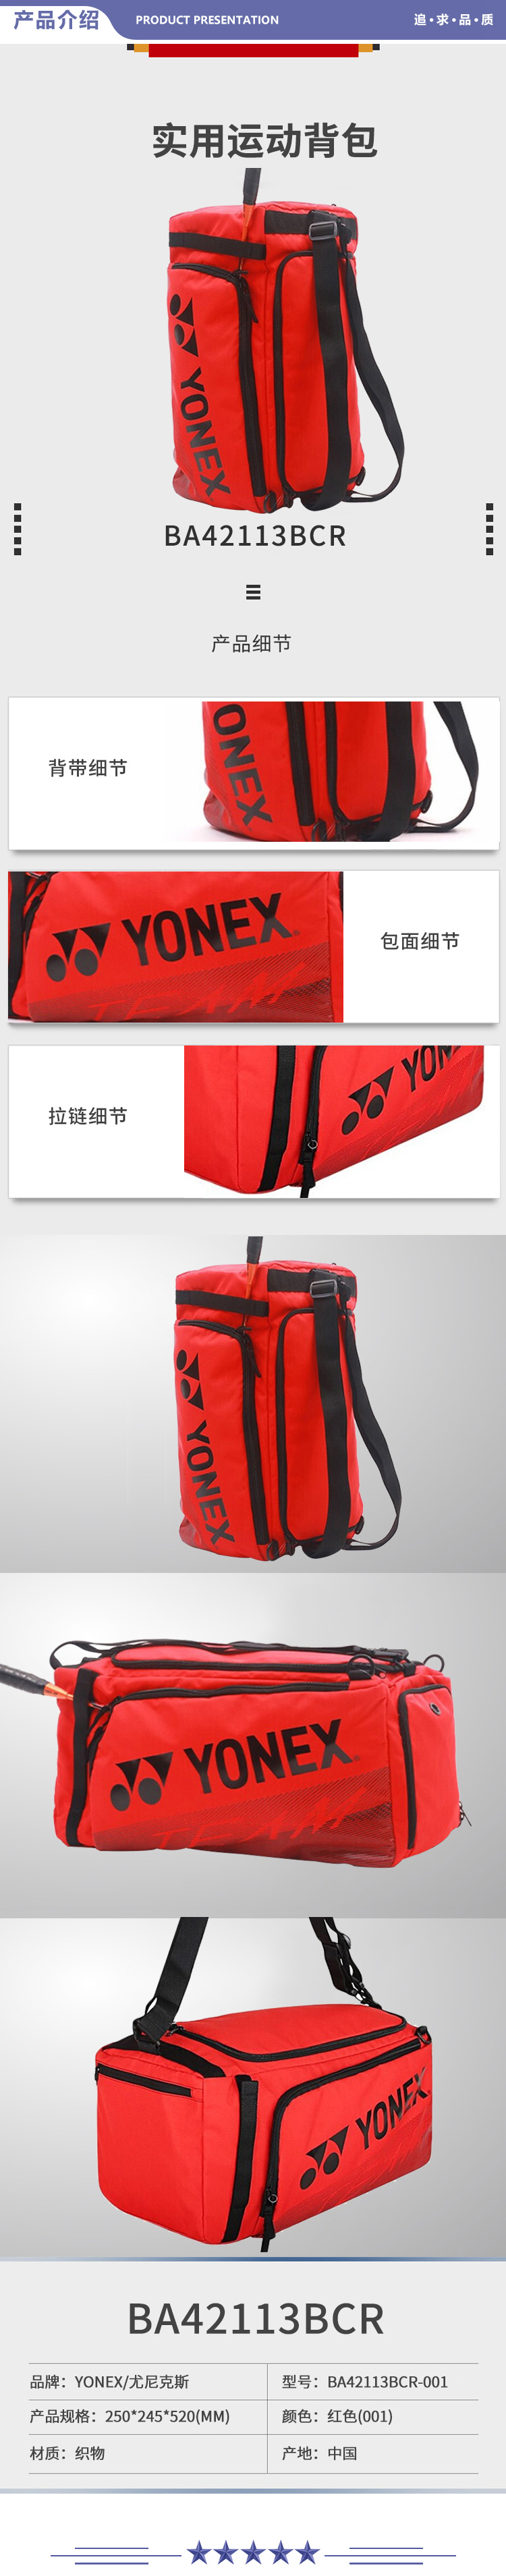 尤尼克斯 BA42113BCR-001 羽毛球包单双肩实用运动背包红色 2.jpg